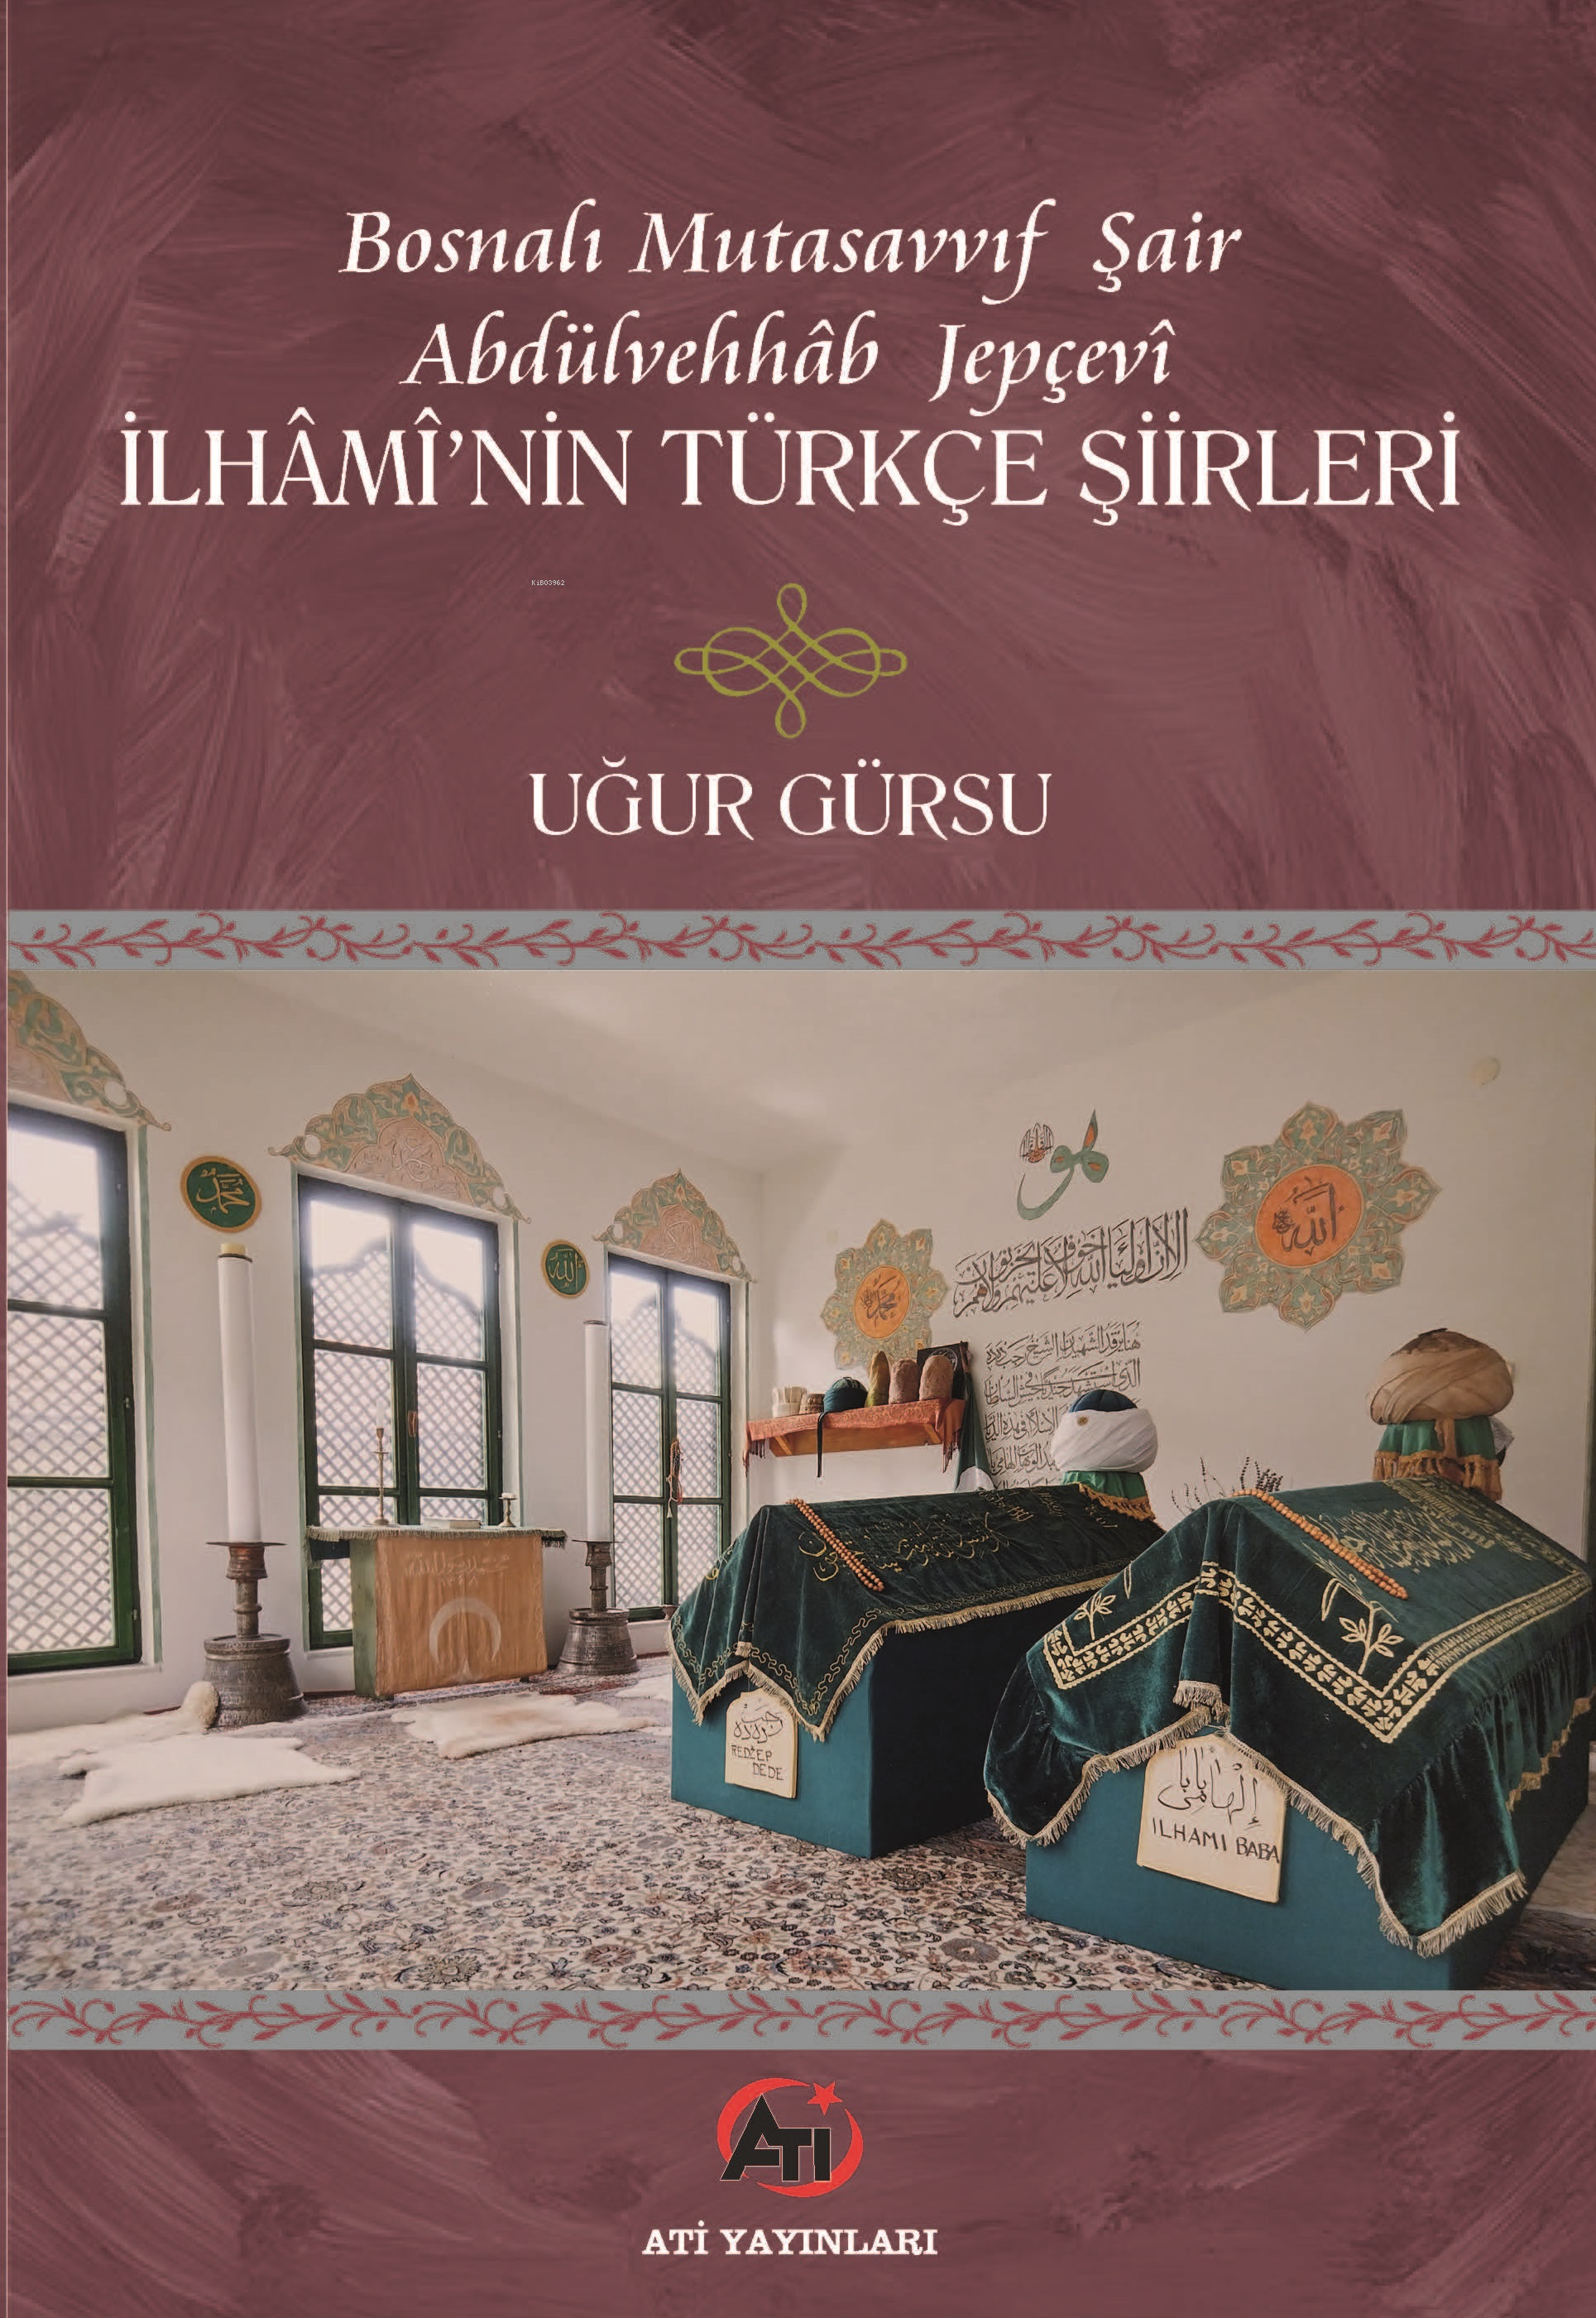 Bosnalı Mutasavvıf Şair Abdulvehhâb Jepçevî iİhâmî’nin Türkçe Şiirleri